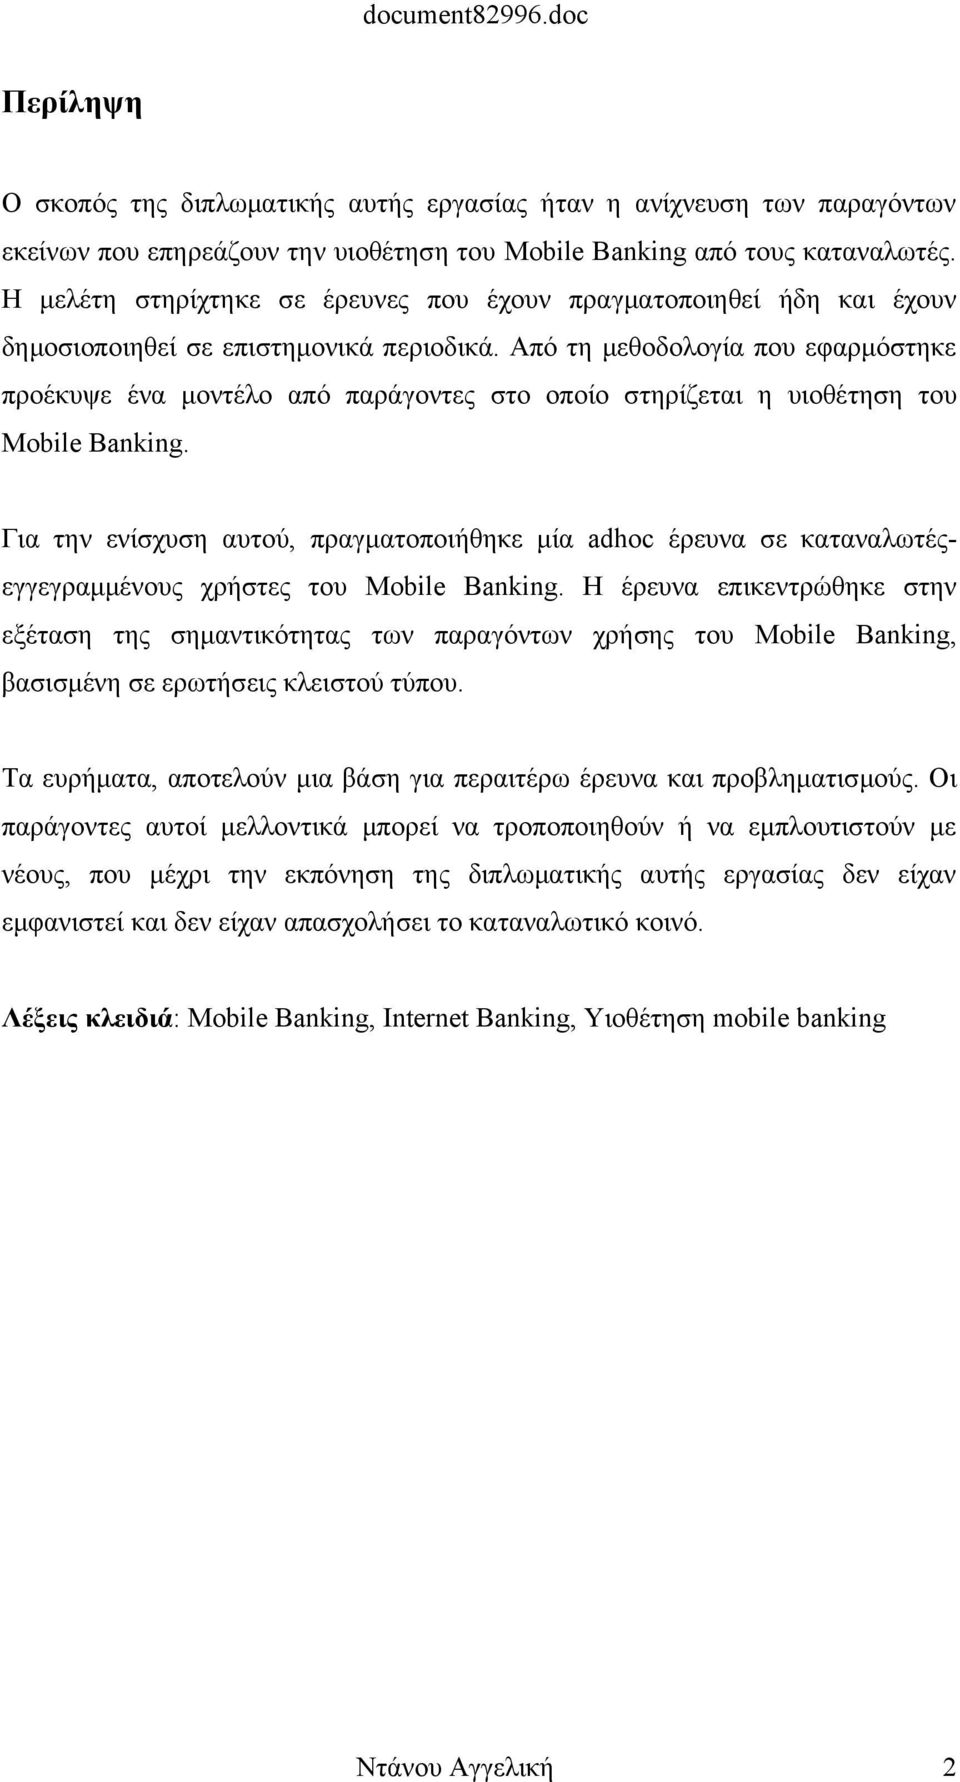 Από τη μεθοδολογία που εφαρμόστηκε προέκυψε ένα μοντέλο από παράγοντες στο οποίο στηρίζεται η υιοθέτηση του Mobile Banking.